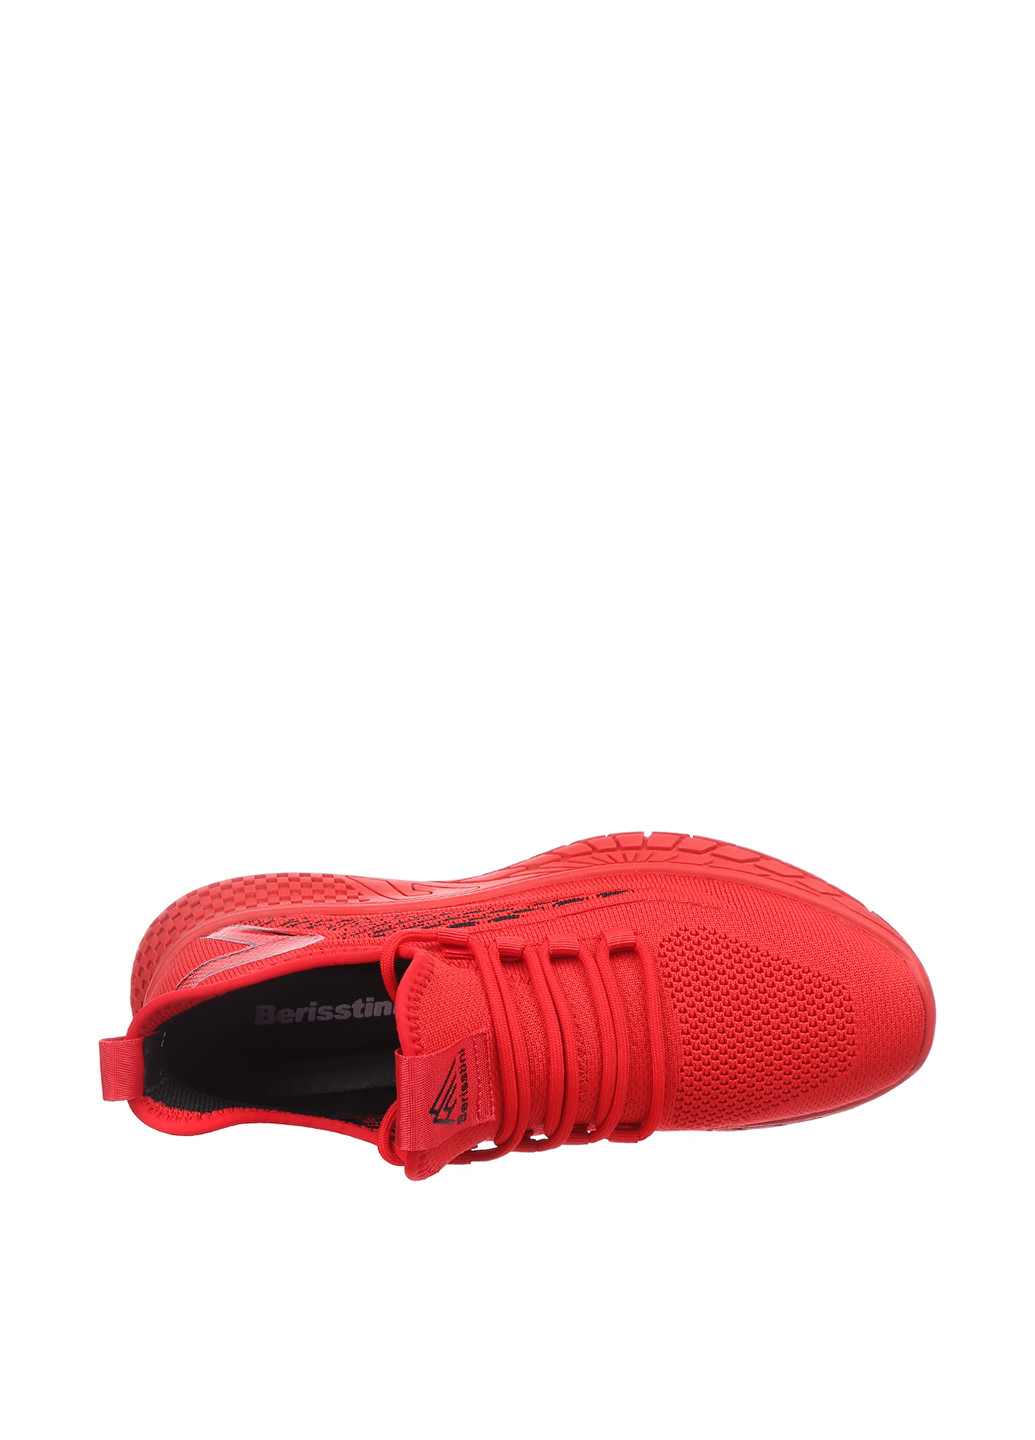 Красные демисезонные кроссовки Berisstini